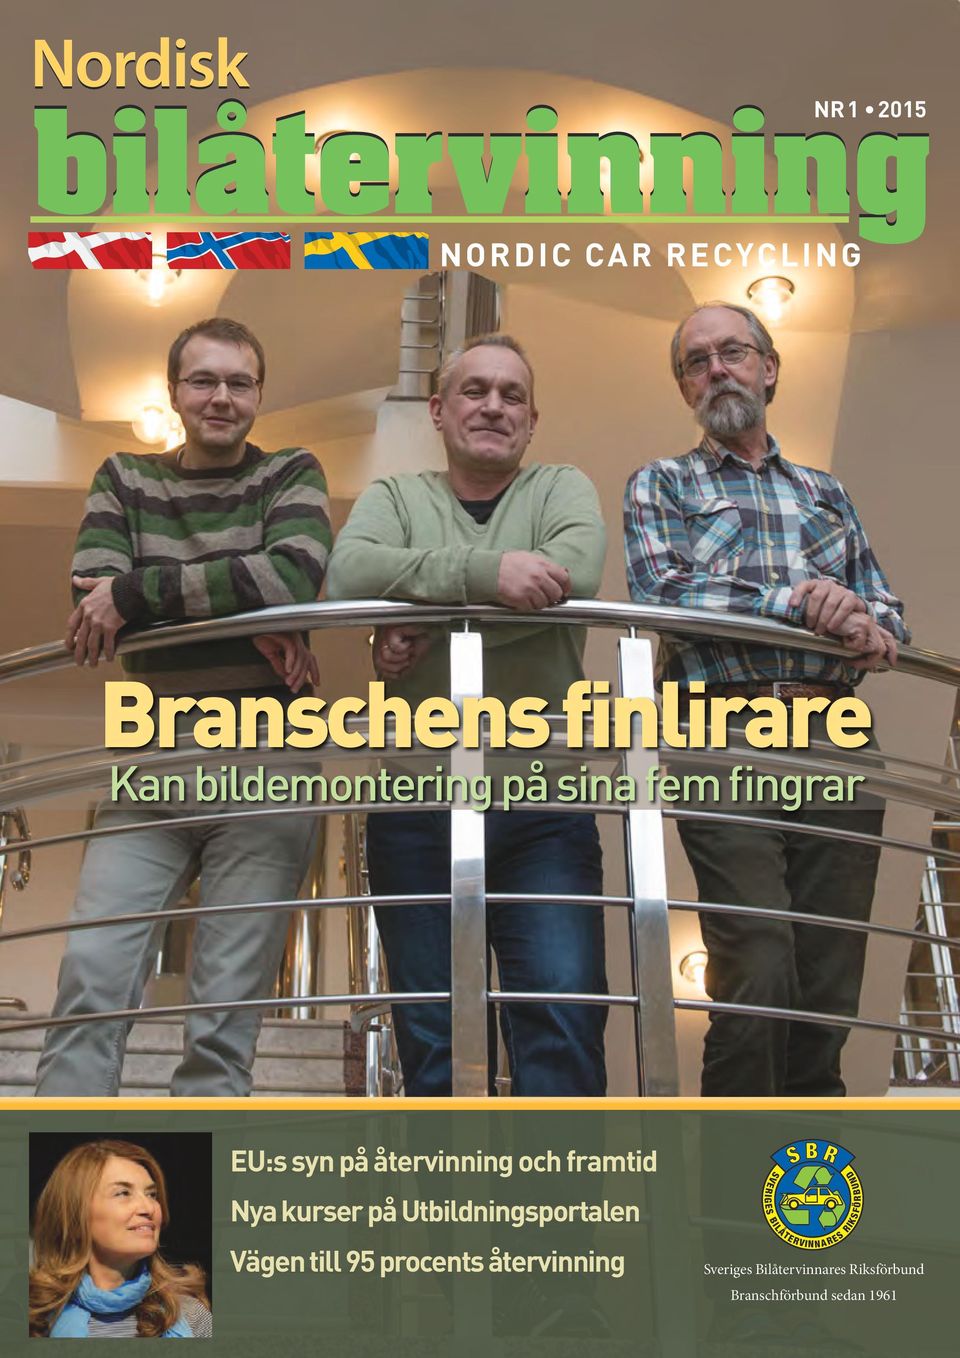 procents återvinning Sveriges Bilåtervinnares Riksförbund Branschförbund sedan 1961 KSFÖRBUND